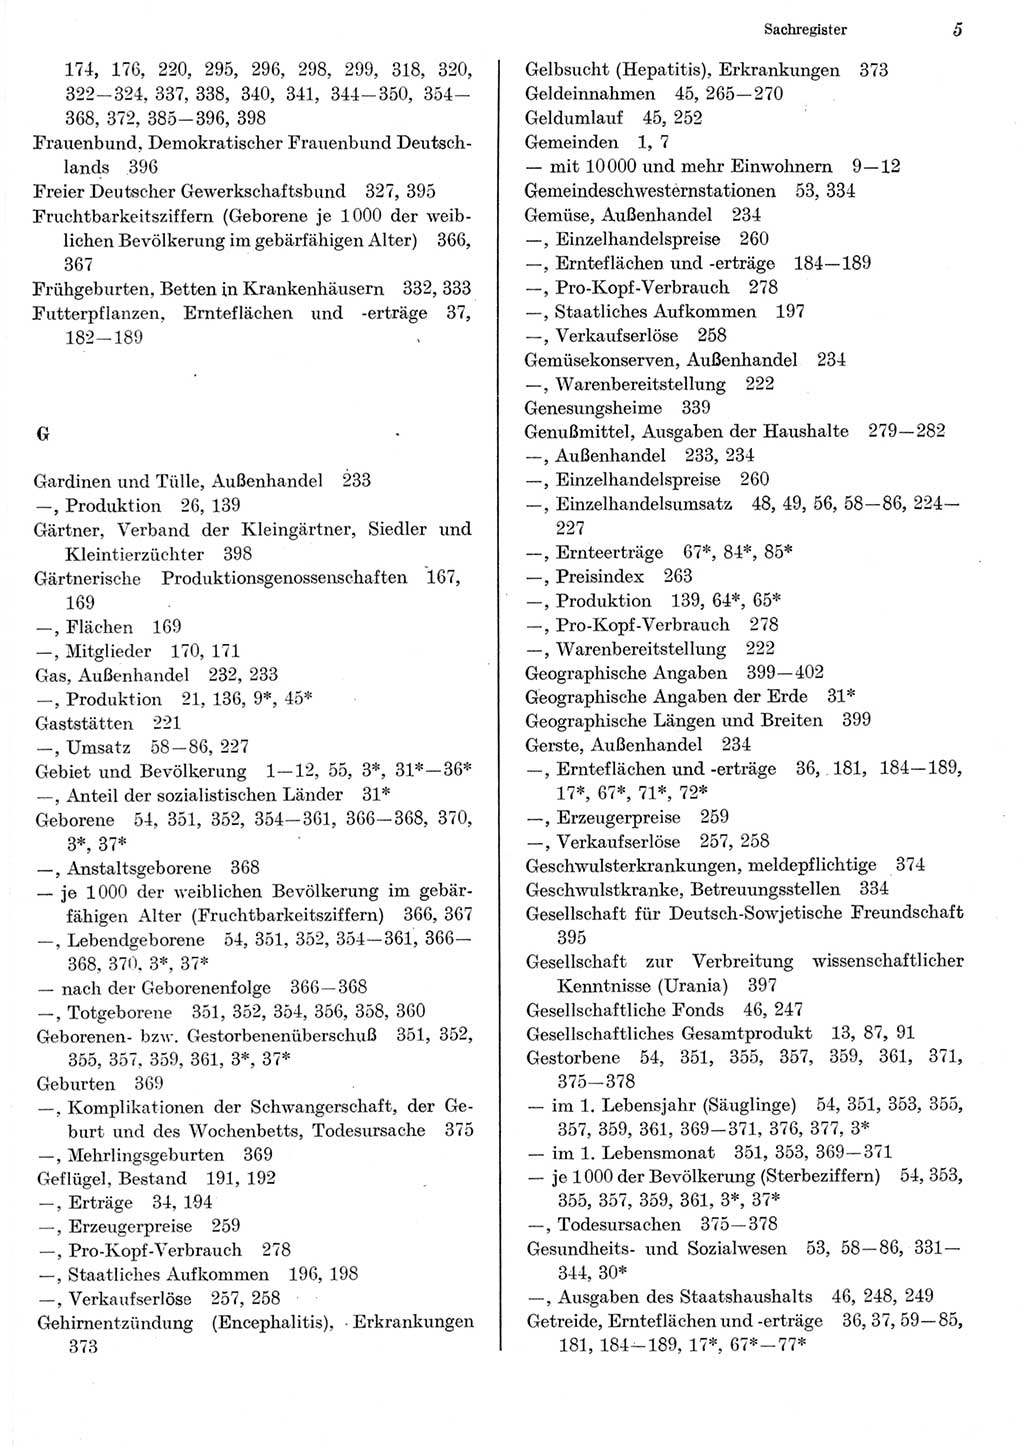 Statistisches Jahrbuch der Deutschen Demokratischen Republik (DDR) 1982, Seite 5 (Stat. Jb. DDR 1982, S. 5)